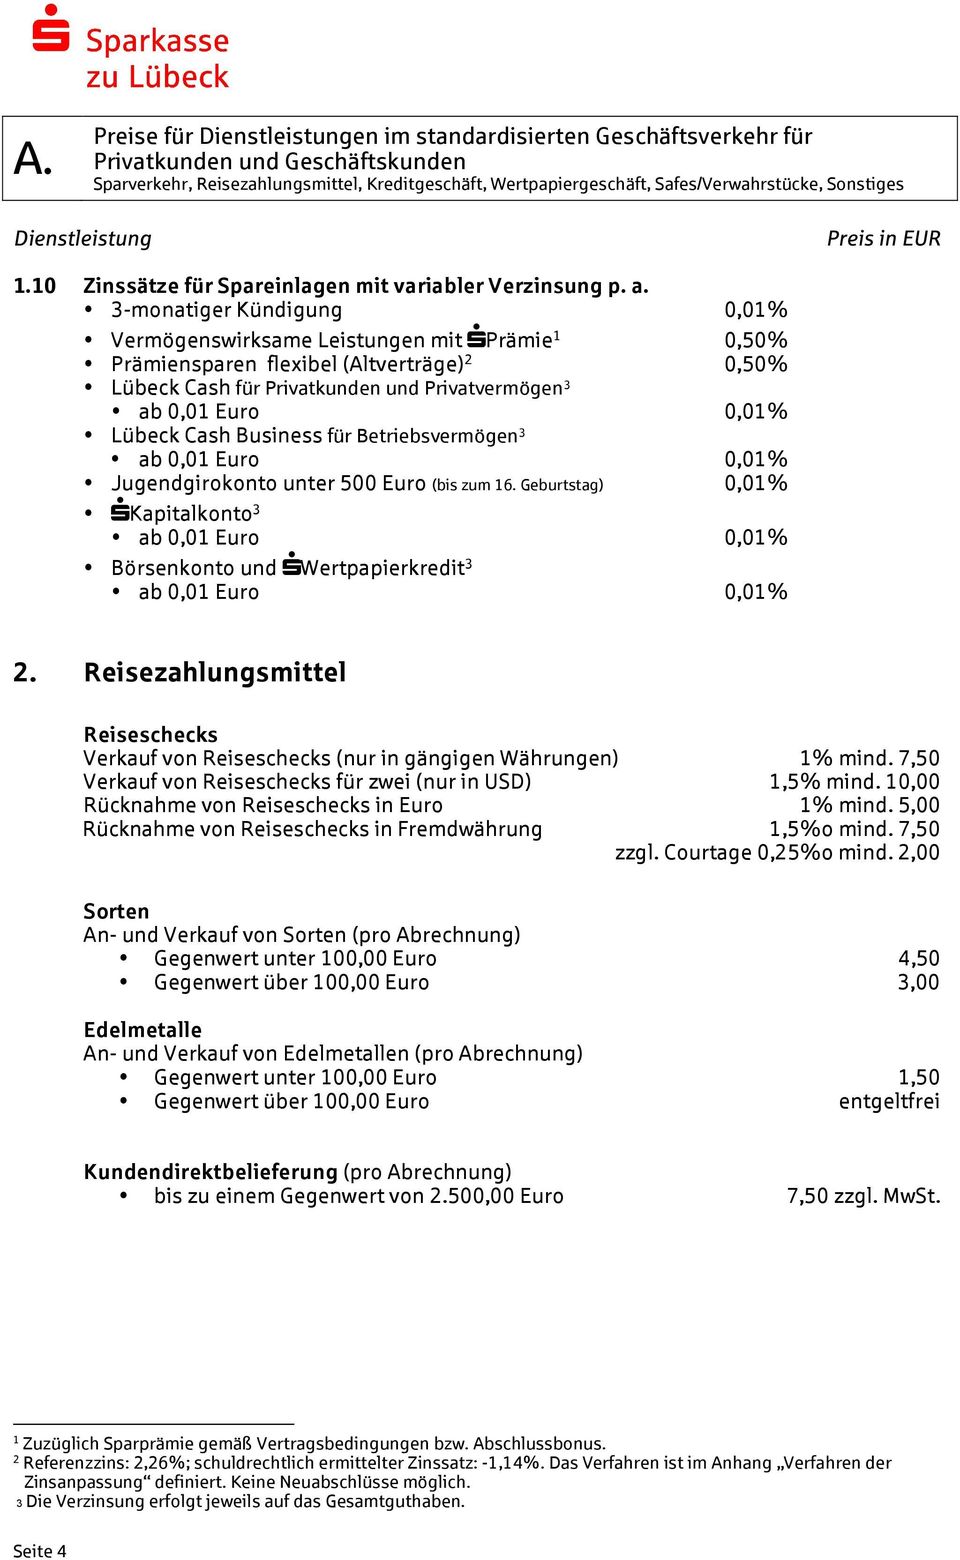 3-monatiger Kündigung 0,01% Vermögenswirksame Leistungen mit sprämie 1 0,50% Prämiensparen flexibel (Altverträge) 2 0,50% Lübeck Cash für Privatkunden und Privatvermögen 3 ab 0,01 Euro 0,01% Lübeck